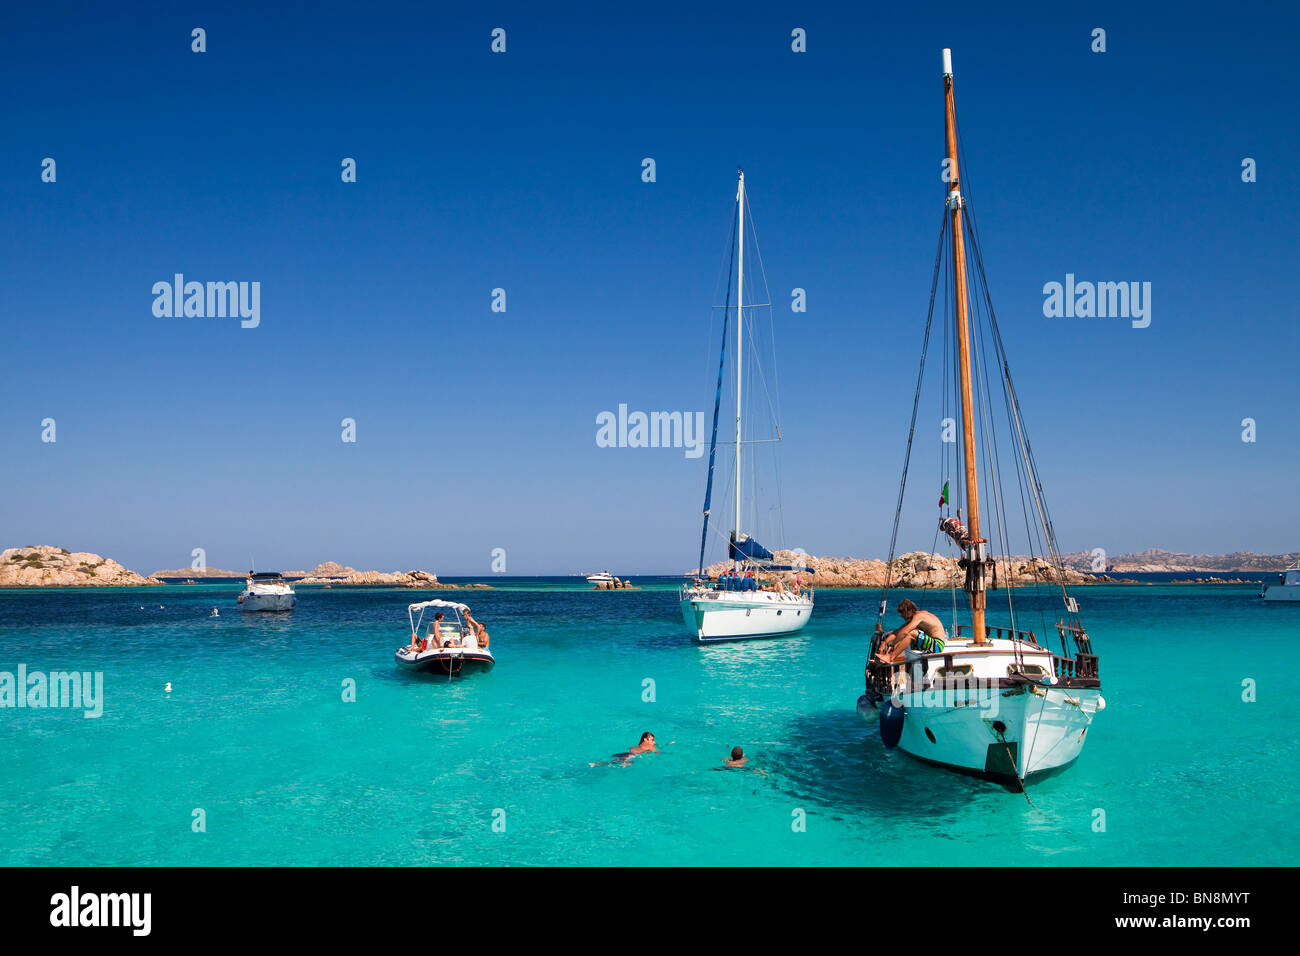 Les yachts au large de l'Île Budelli, partie de l'archipel de La Maddalena en Sardaigne Banque D'Images